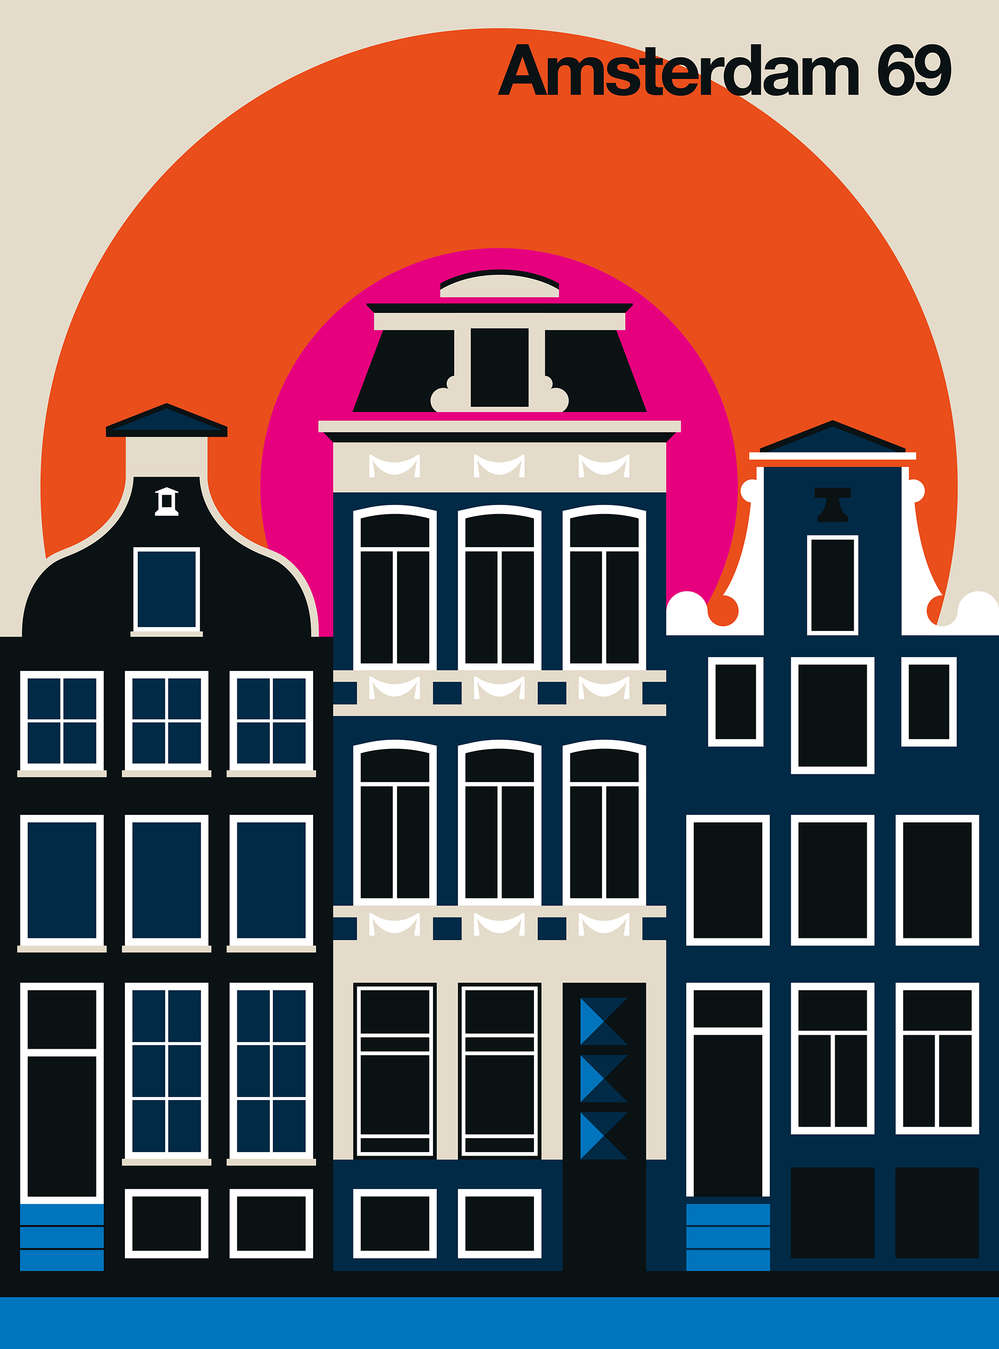             La casa di Amsterdam si presenta con un murale dal design retrò
        